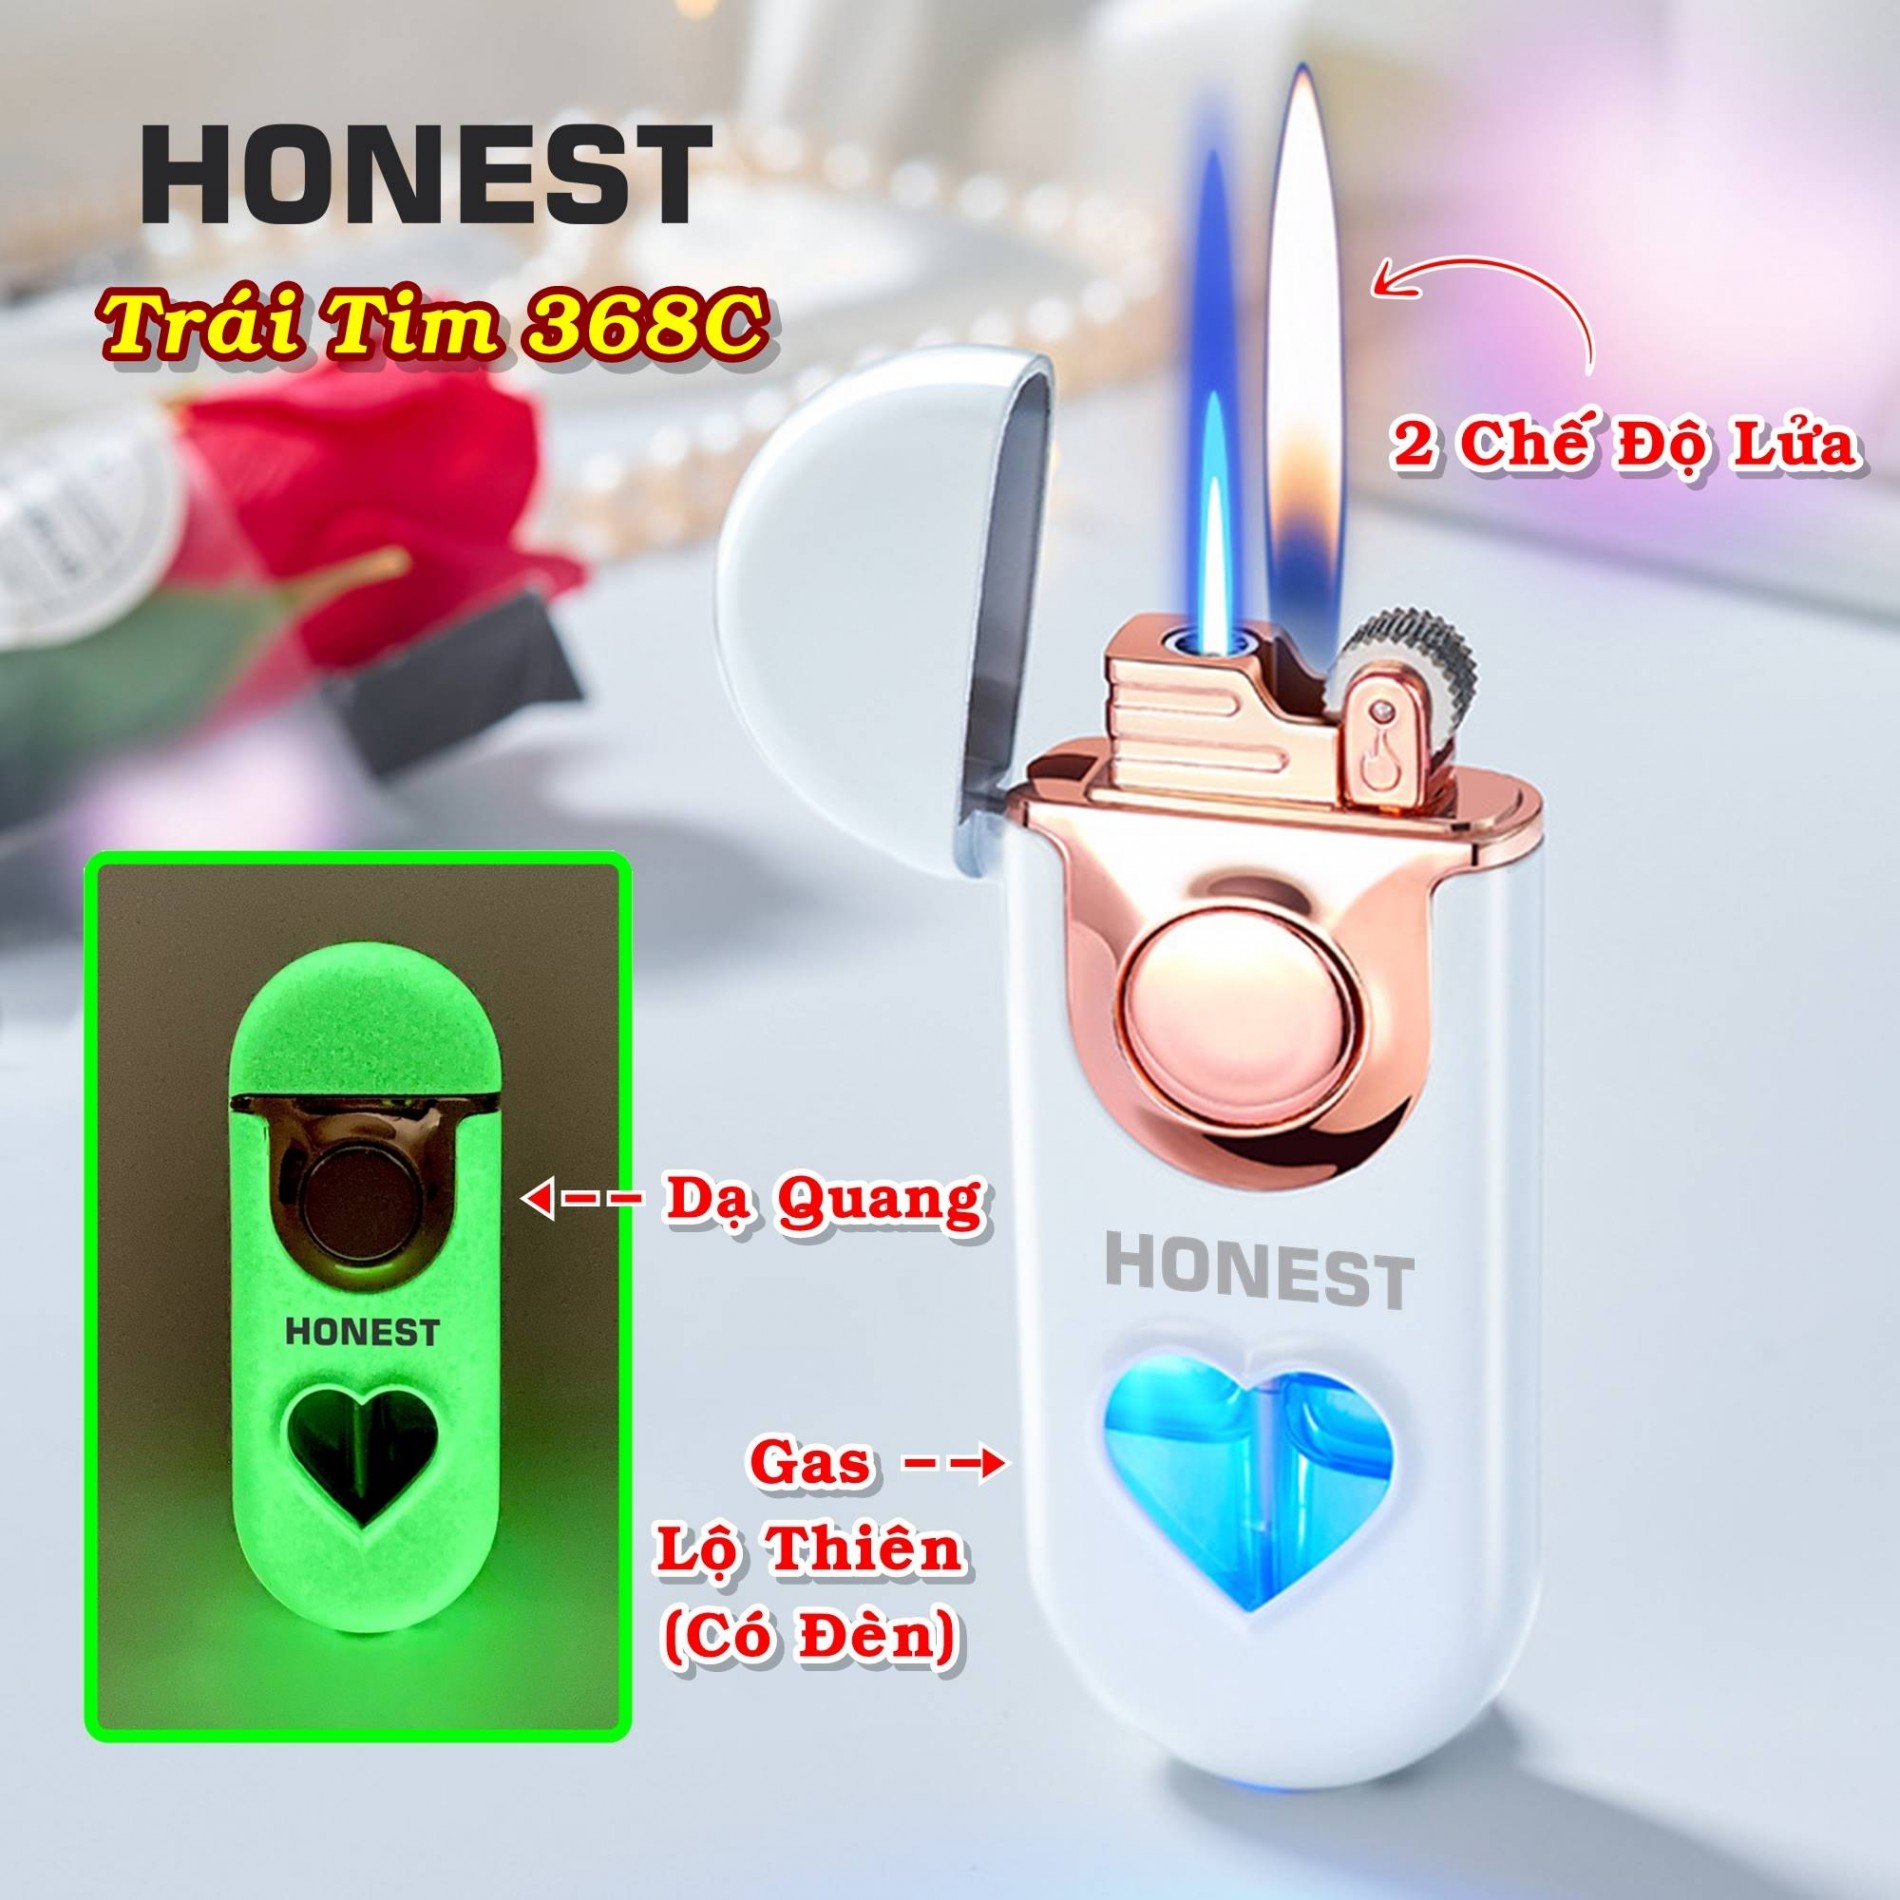 Hột quẹt bật lửa Honest 2 chế độ lửa có đèn hình trái tim phát sáng dạ quang - xài gas